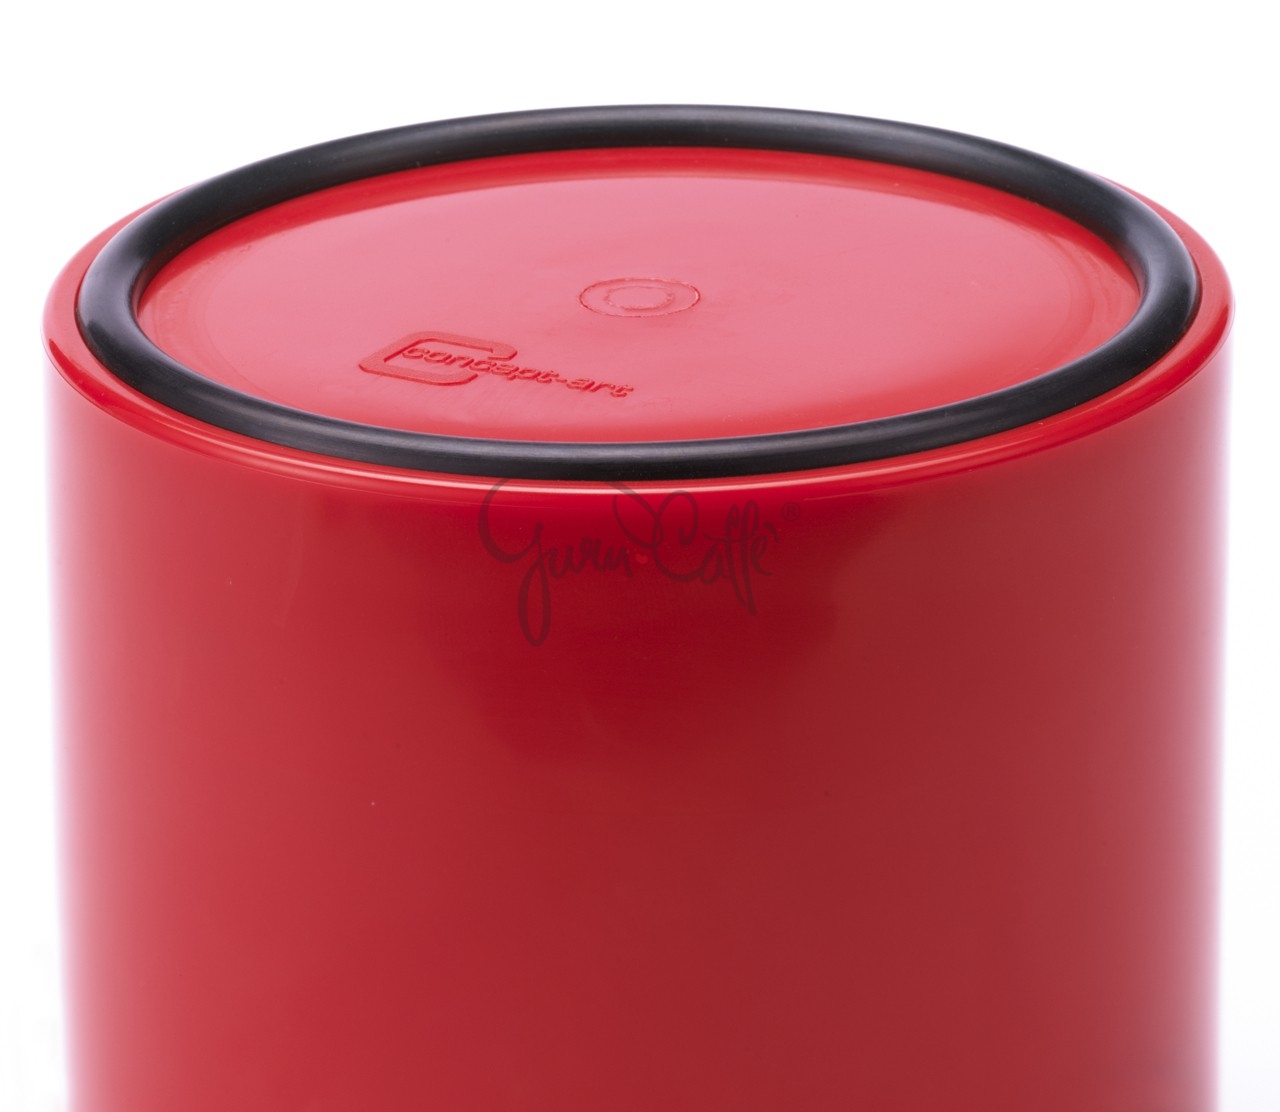 Odklepávací nádoba na kávu  Concept-Art Joe FREX KNOCKBOX Basic Red, materiál plast, barva červená